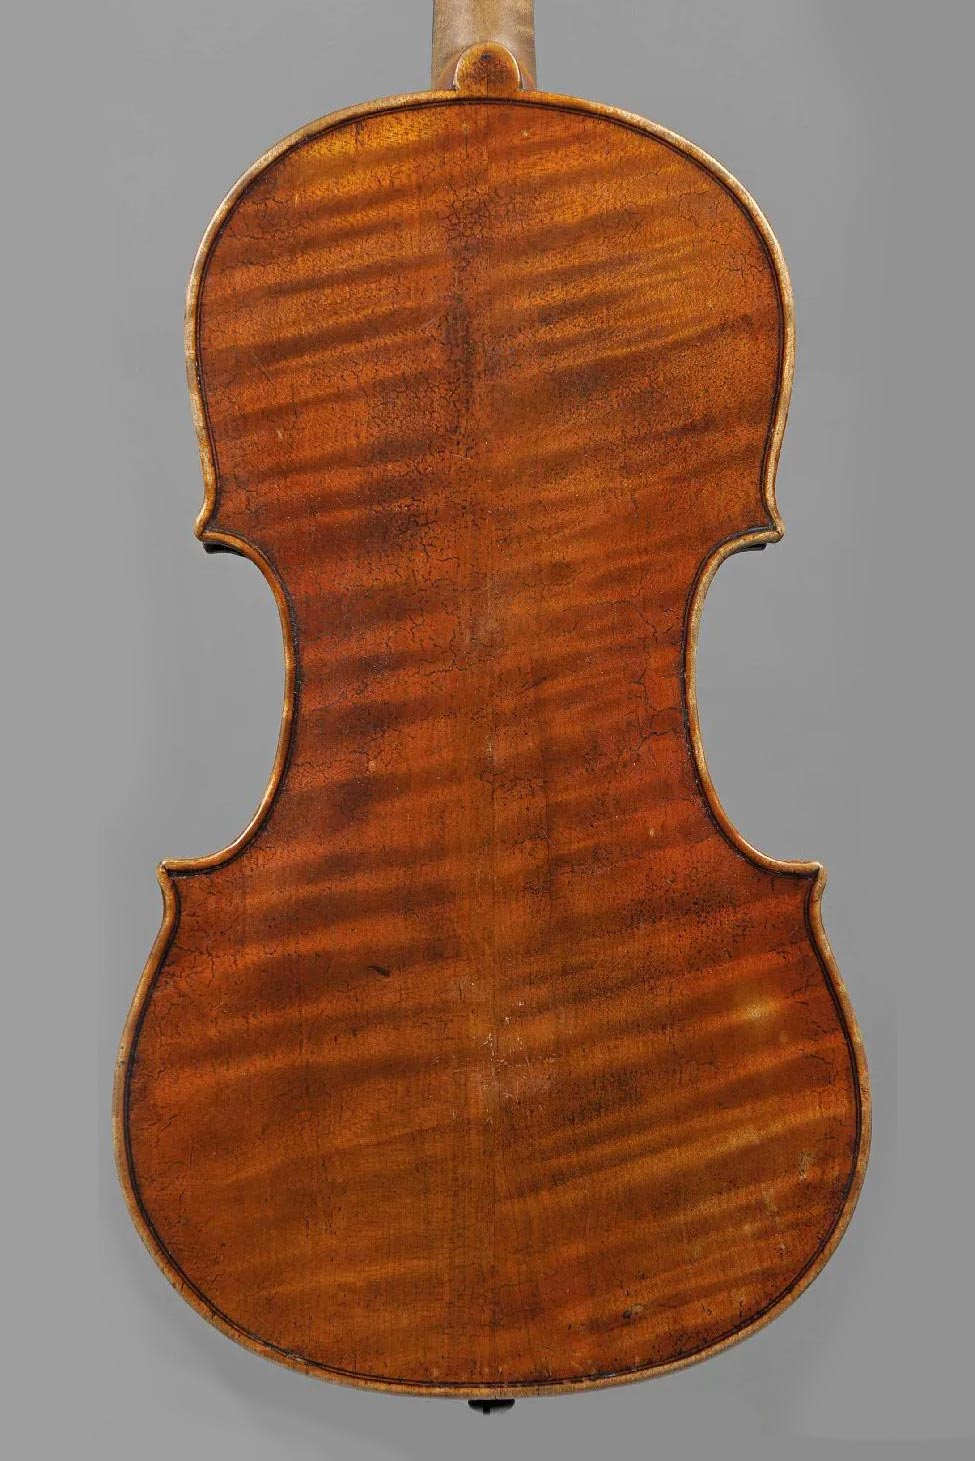 Violon de Nicolo BIANCHI Instrument mis en vente par Vichy Enchères le 6 juin 2013 © JH Bayle